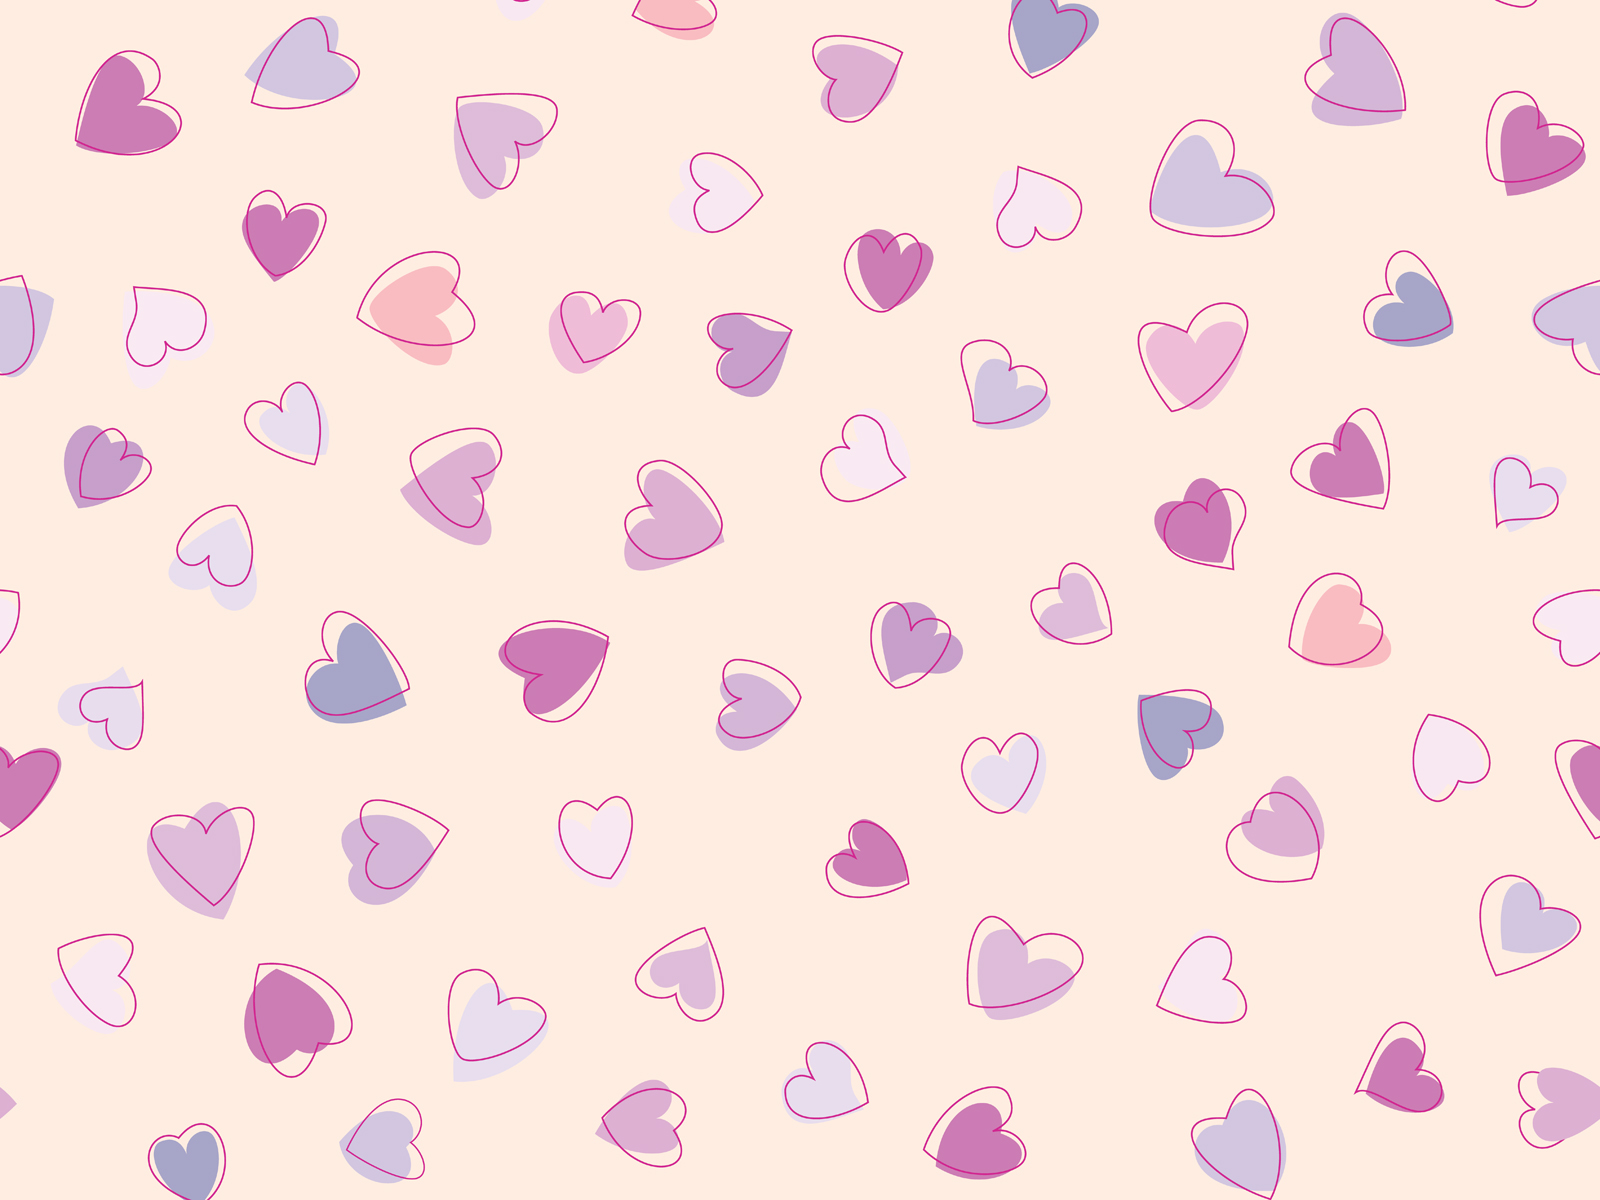 Cute Heart Pattern wallpaper 1600x1200 27954